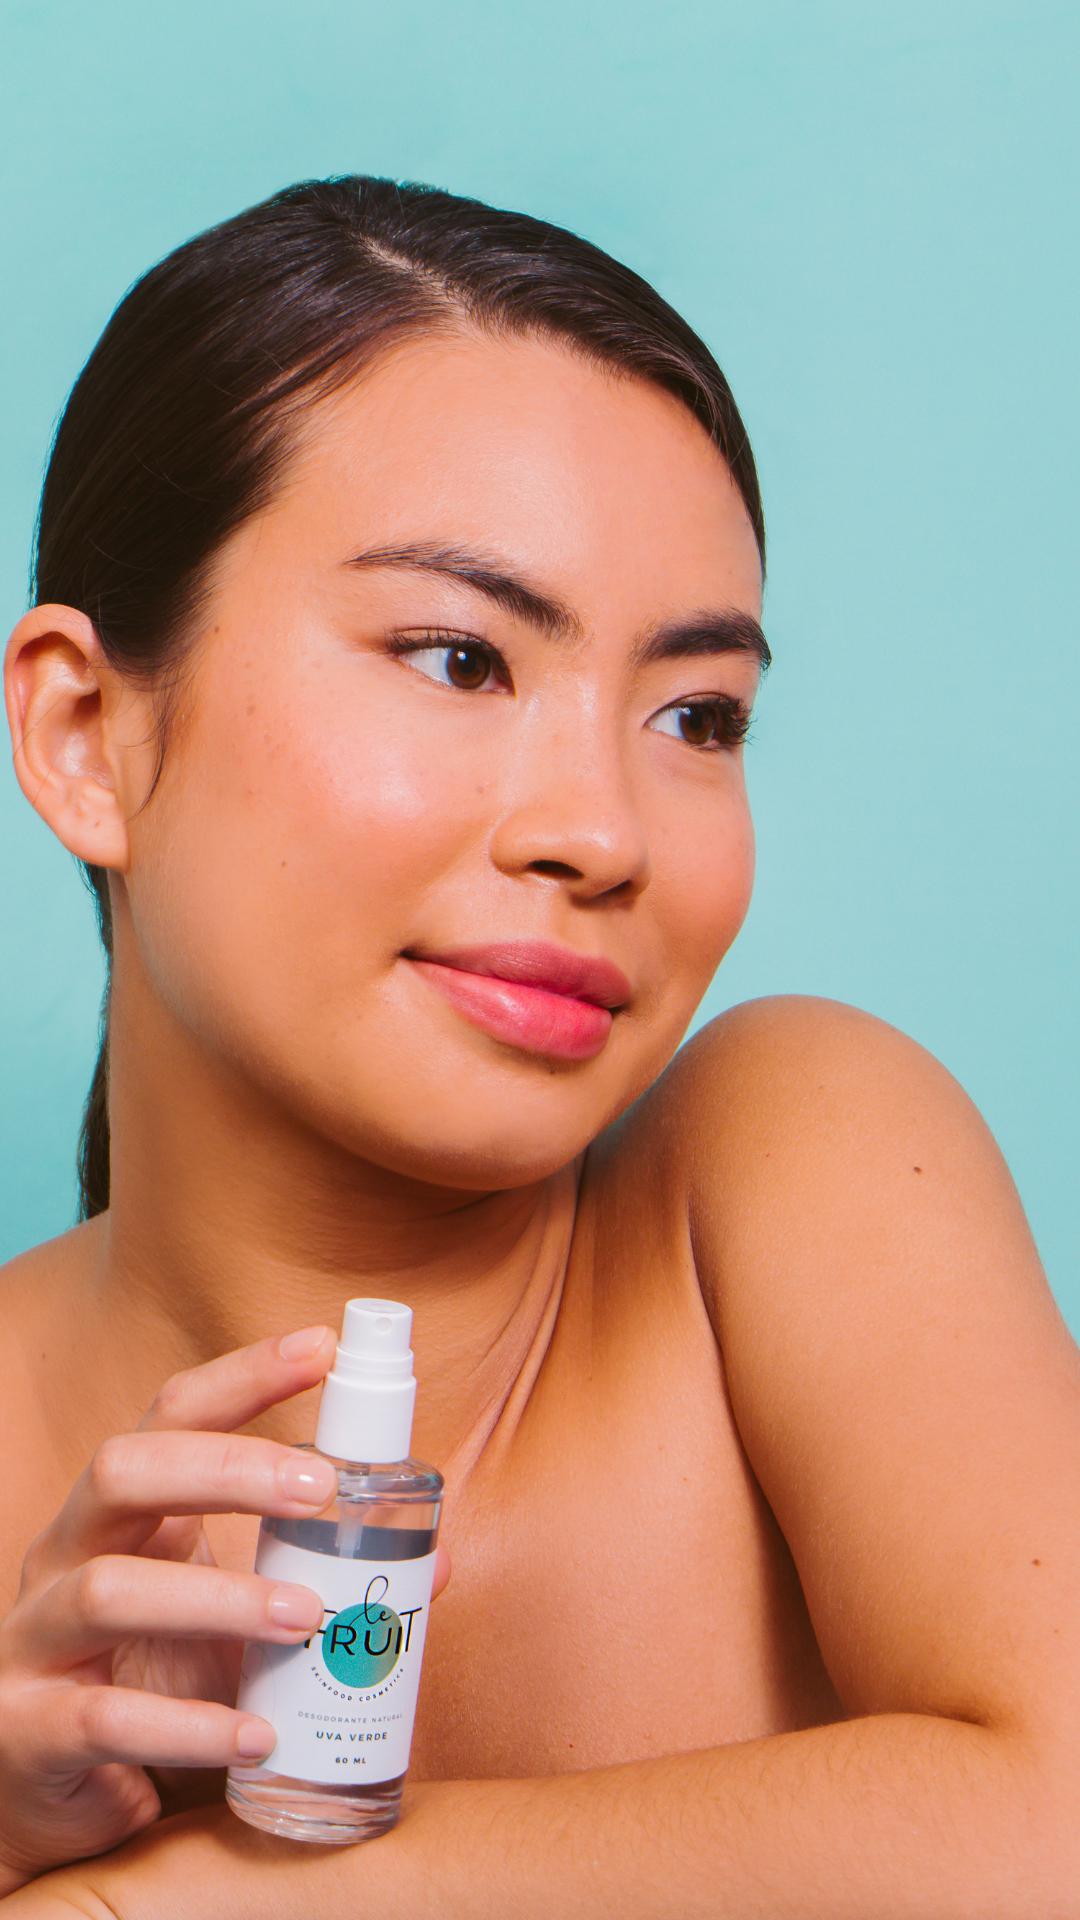 Foto em fundo azul mostra em primeiro plano o rosto de uma mulher com traços asiáticos com ombros a mostra segurando um frasco de desodorante natural